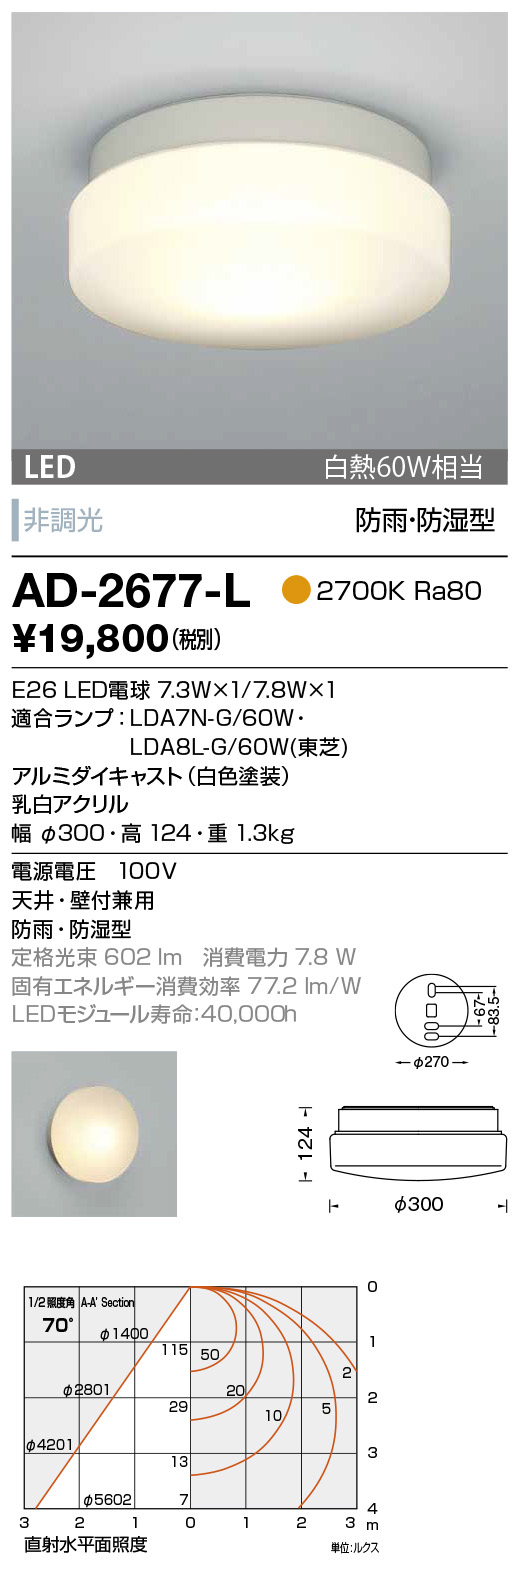 山田照明 AD-2677-L LEDの照明器具なら激安通販販売のベストプライスへ